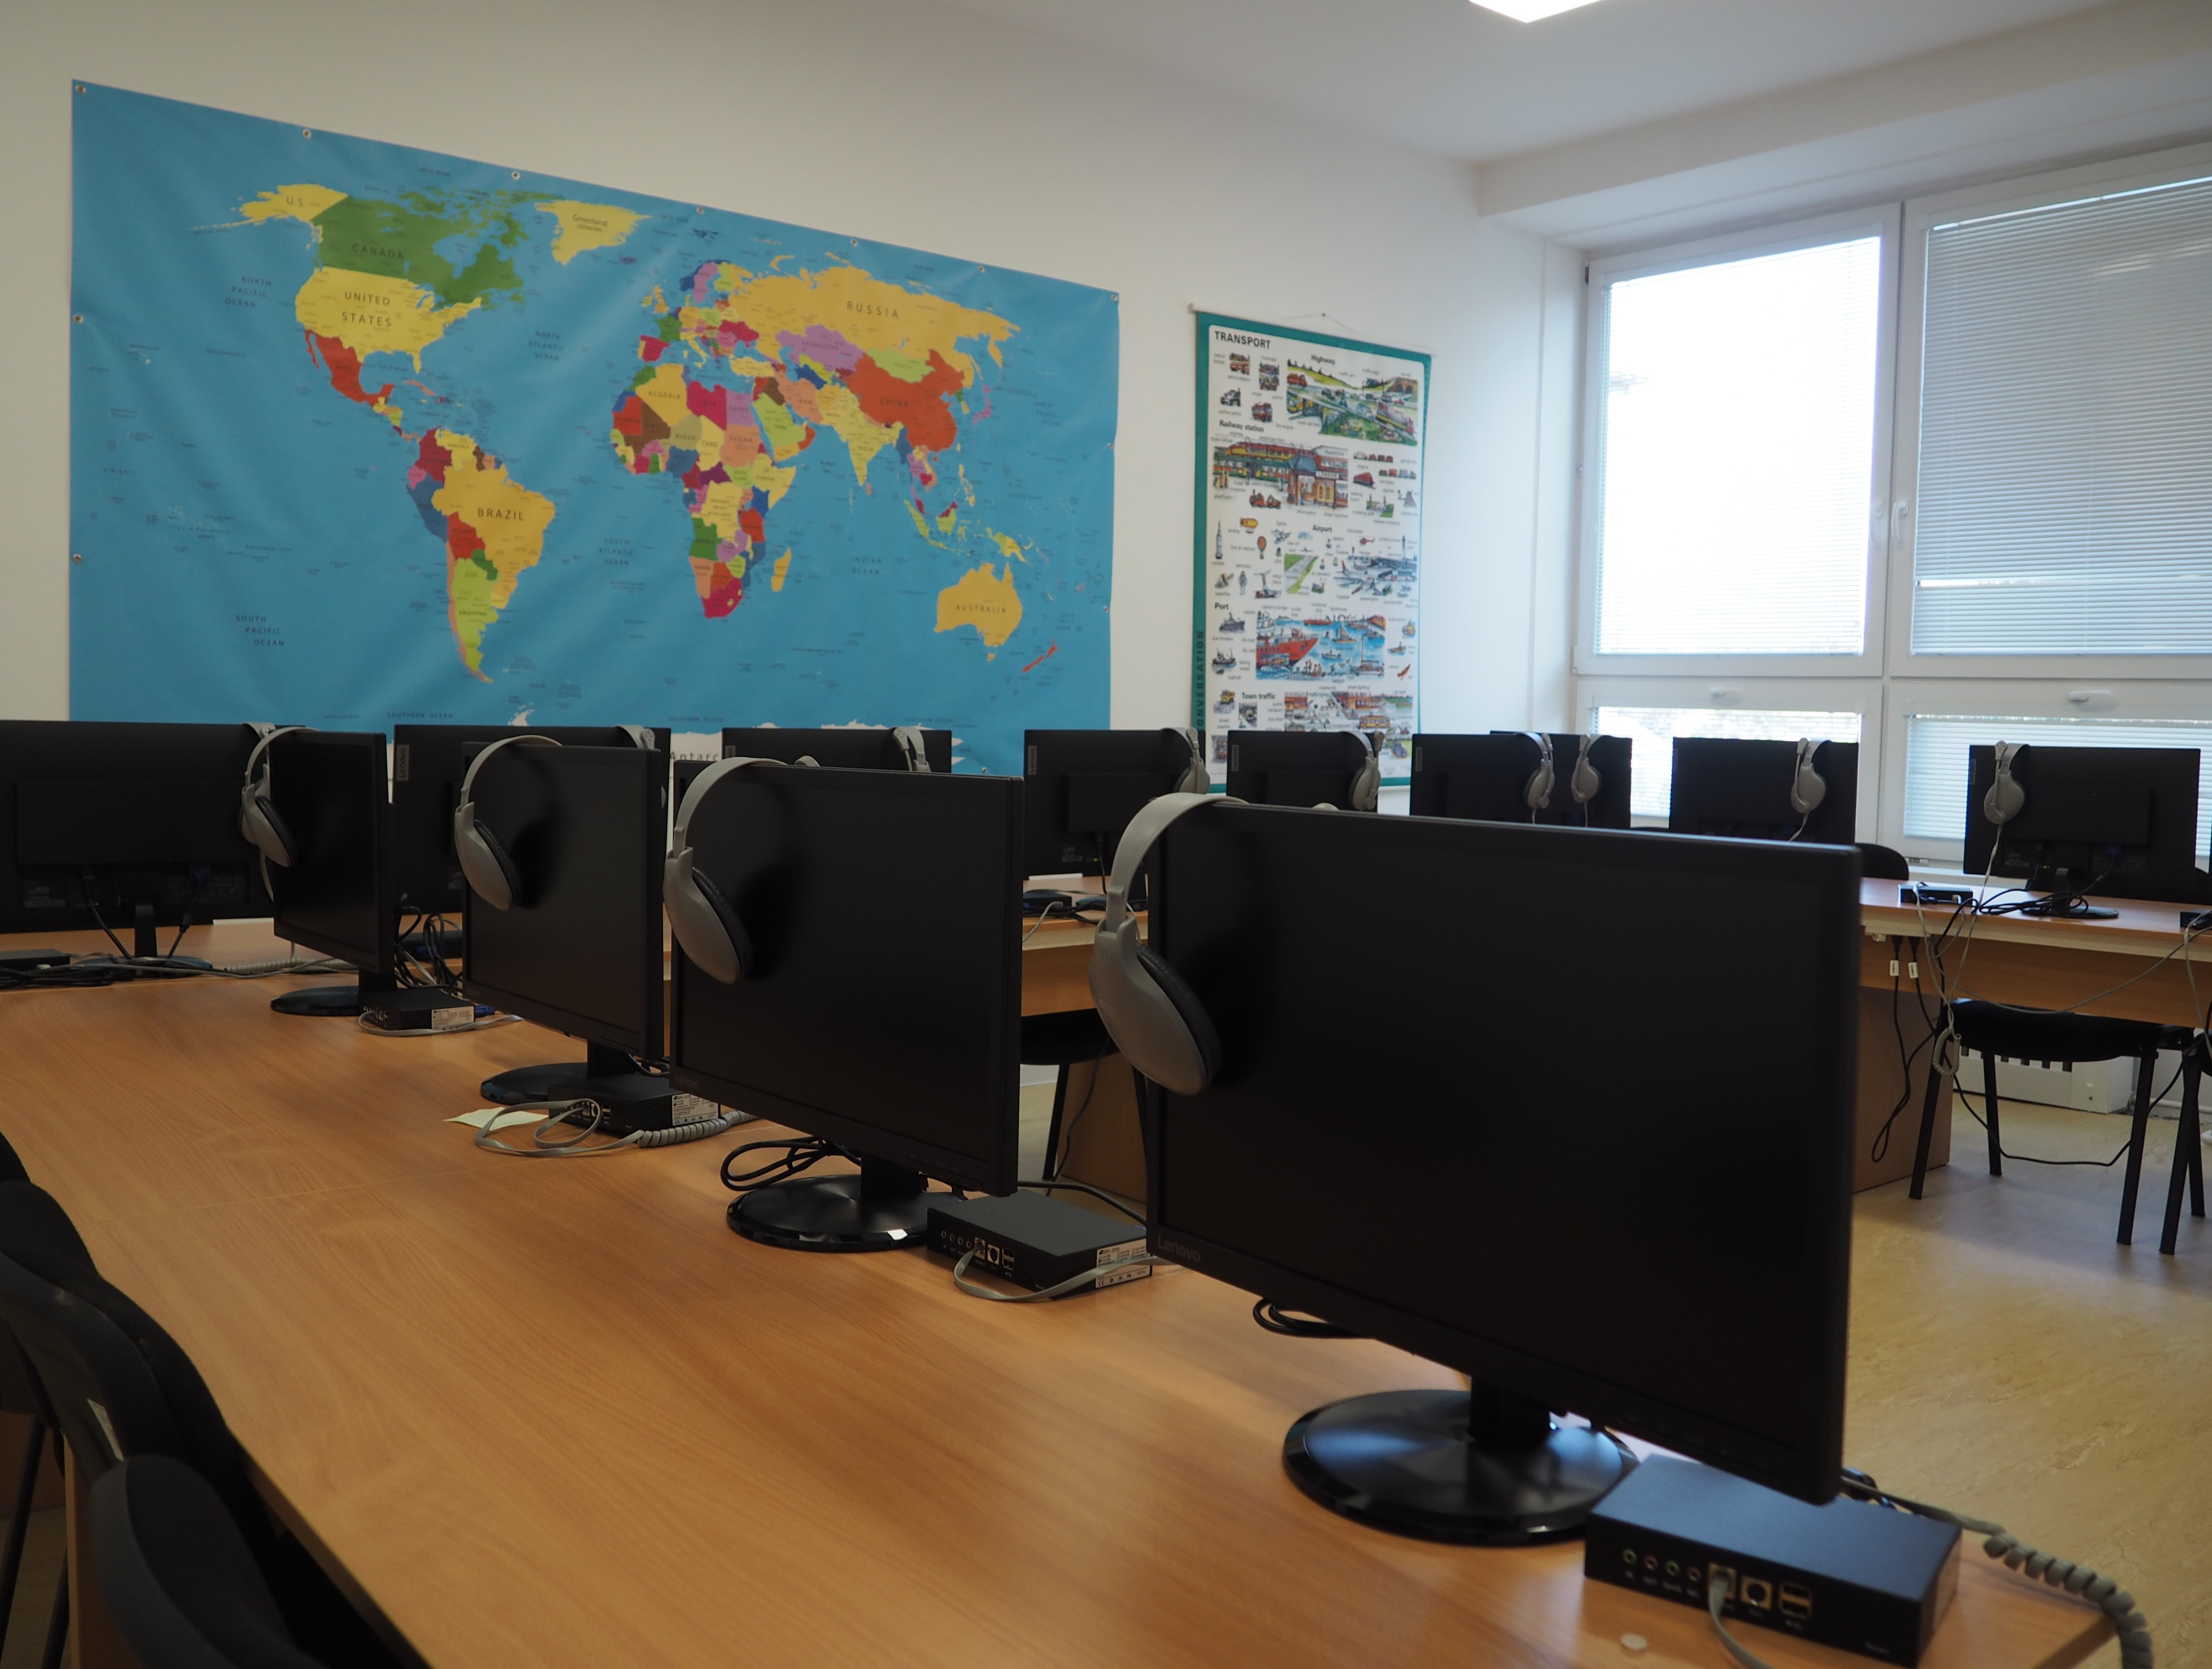 Teljesen felszerelt interaktív angolterem várta a diákokat Nagymegyeren (A szerző felvétele)